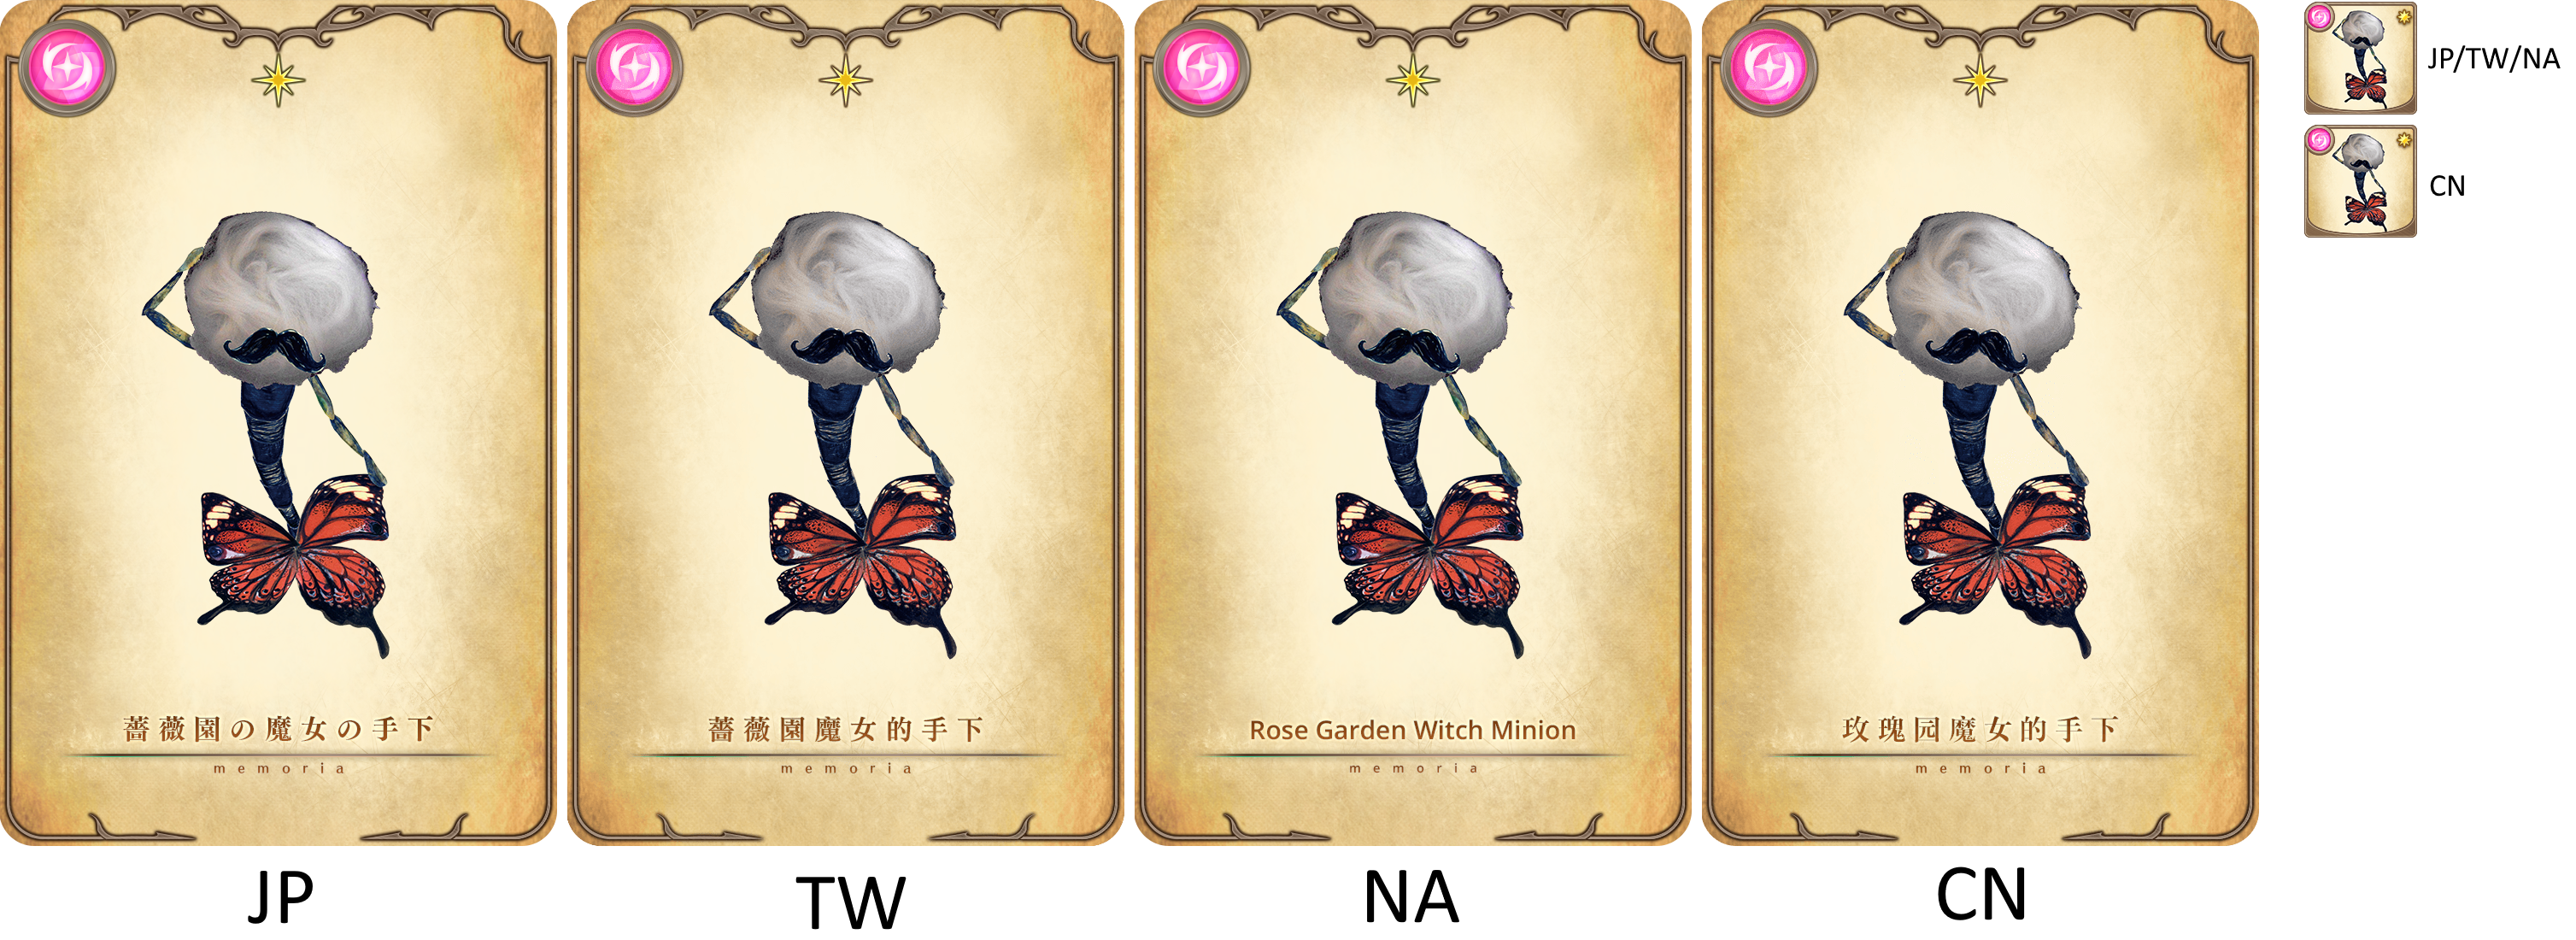 Puella Magi Madoka Magica Side Story: Magia Record - Minion of the Rose Garden Witch [memoria_1001]